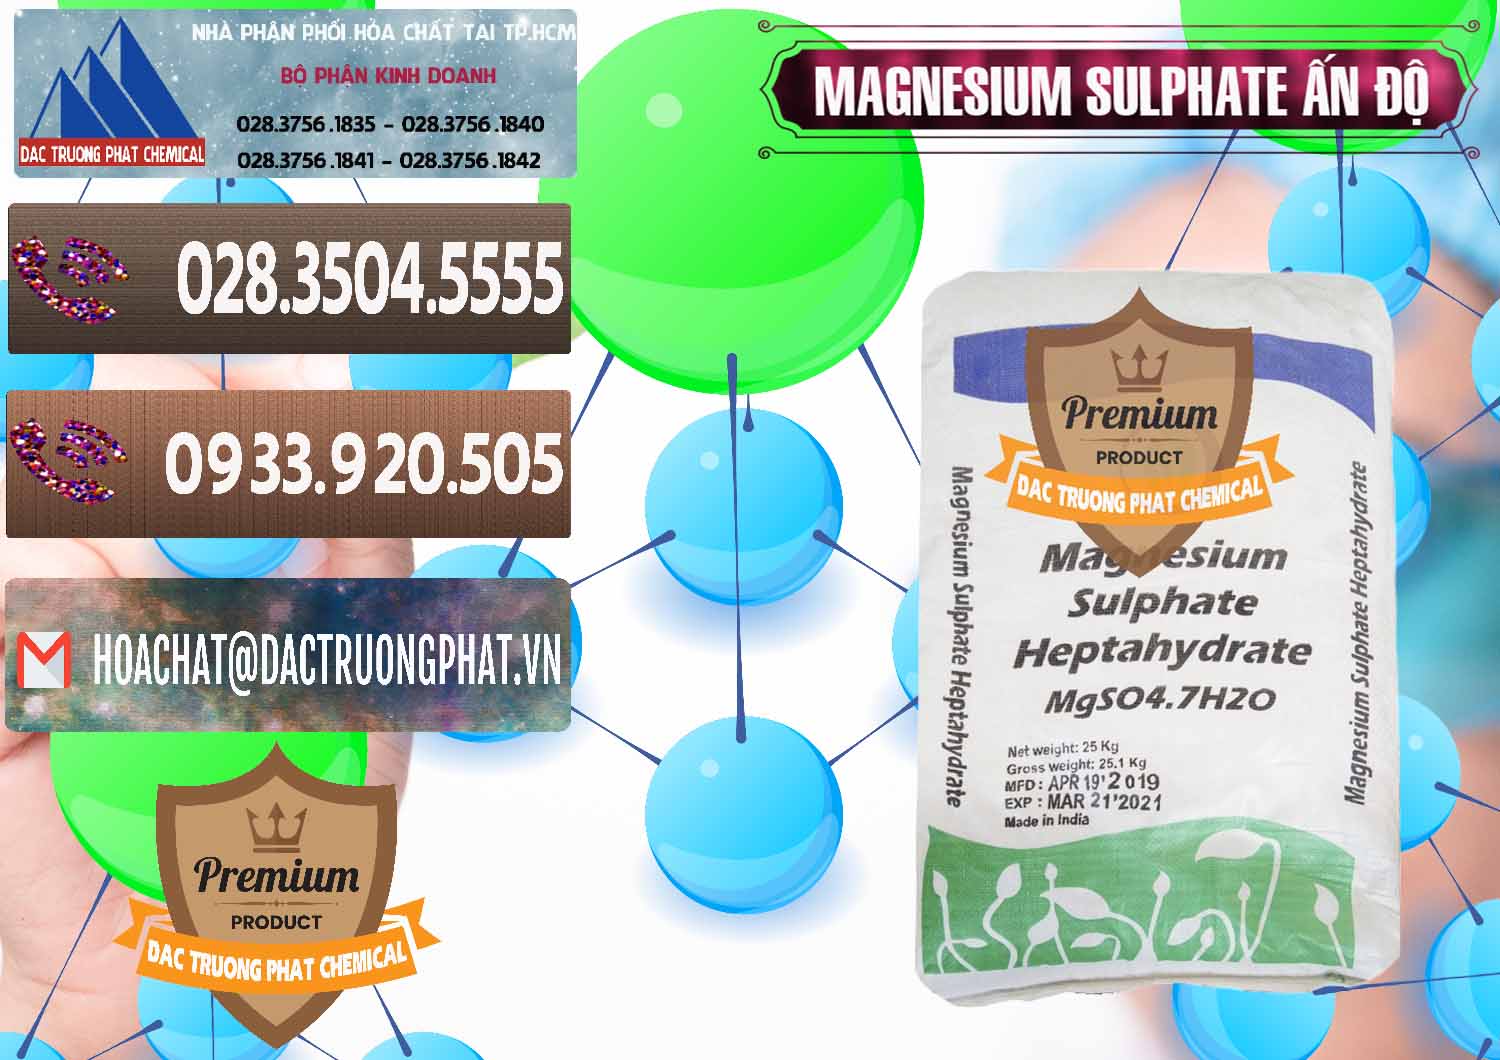 Đơn vị chuyên bán _ cung cấp MGSO4.7H2O – Magnesium Sulphate Heptahydrate Ấn Độ India - 0362 - Nhà cung cấp ( bán ) hóa chất tại TP.HCM - hoachatviet.net